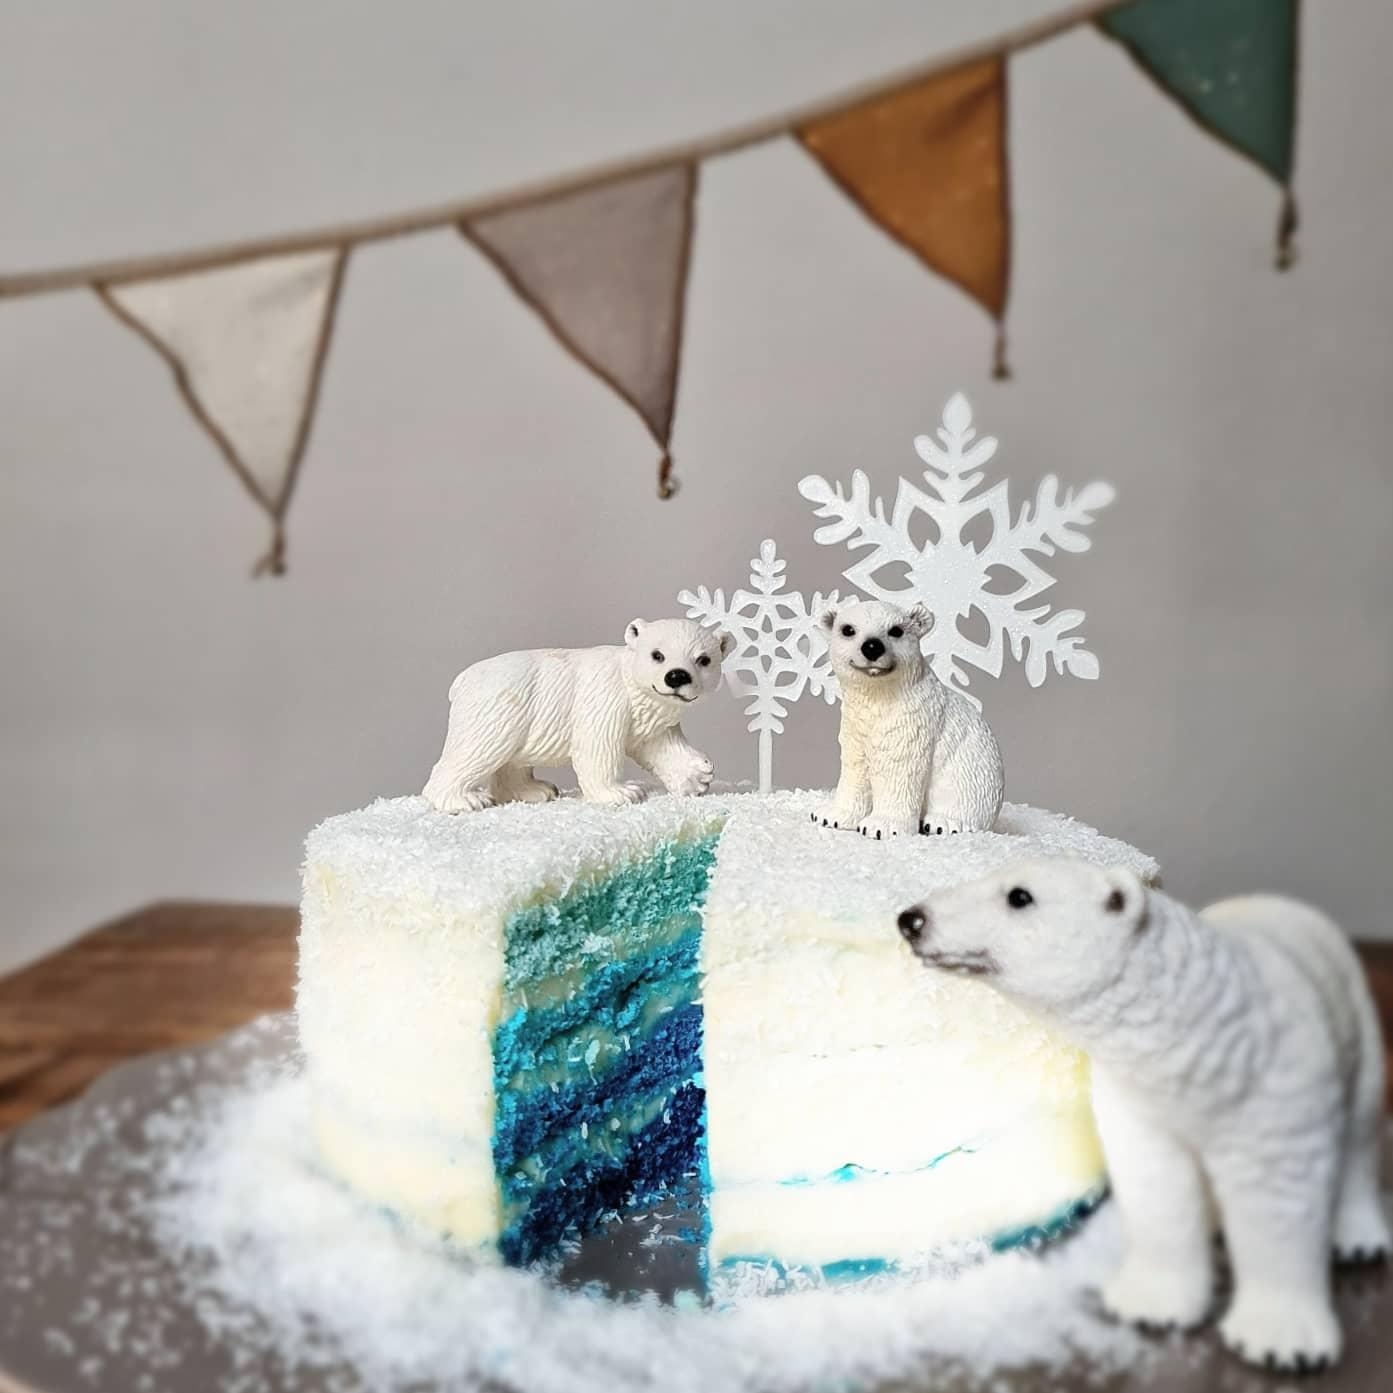 Passend zum Wetter war der Geburtstagskuchen heute ein #arcticcake  ☺❄❄❄ #geburtstagstorte 